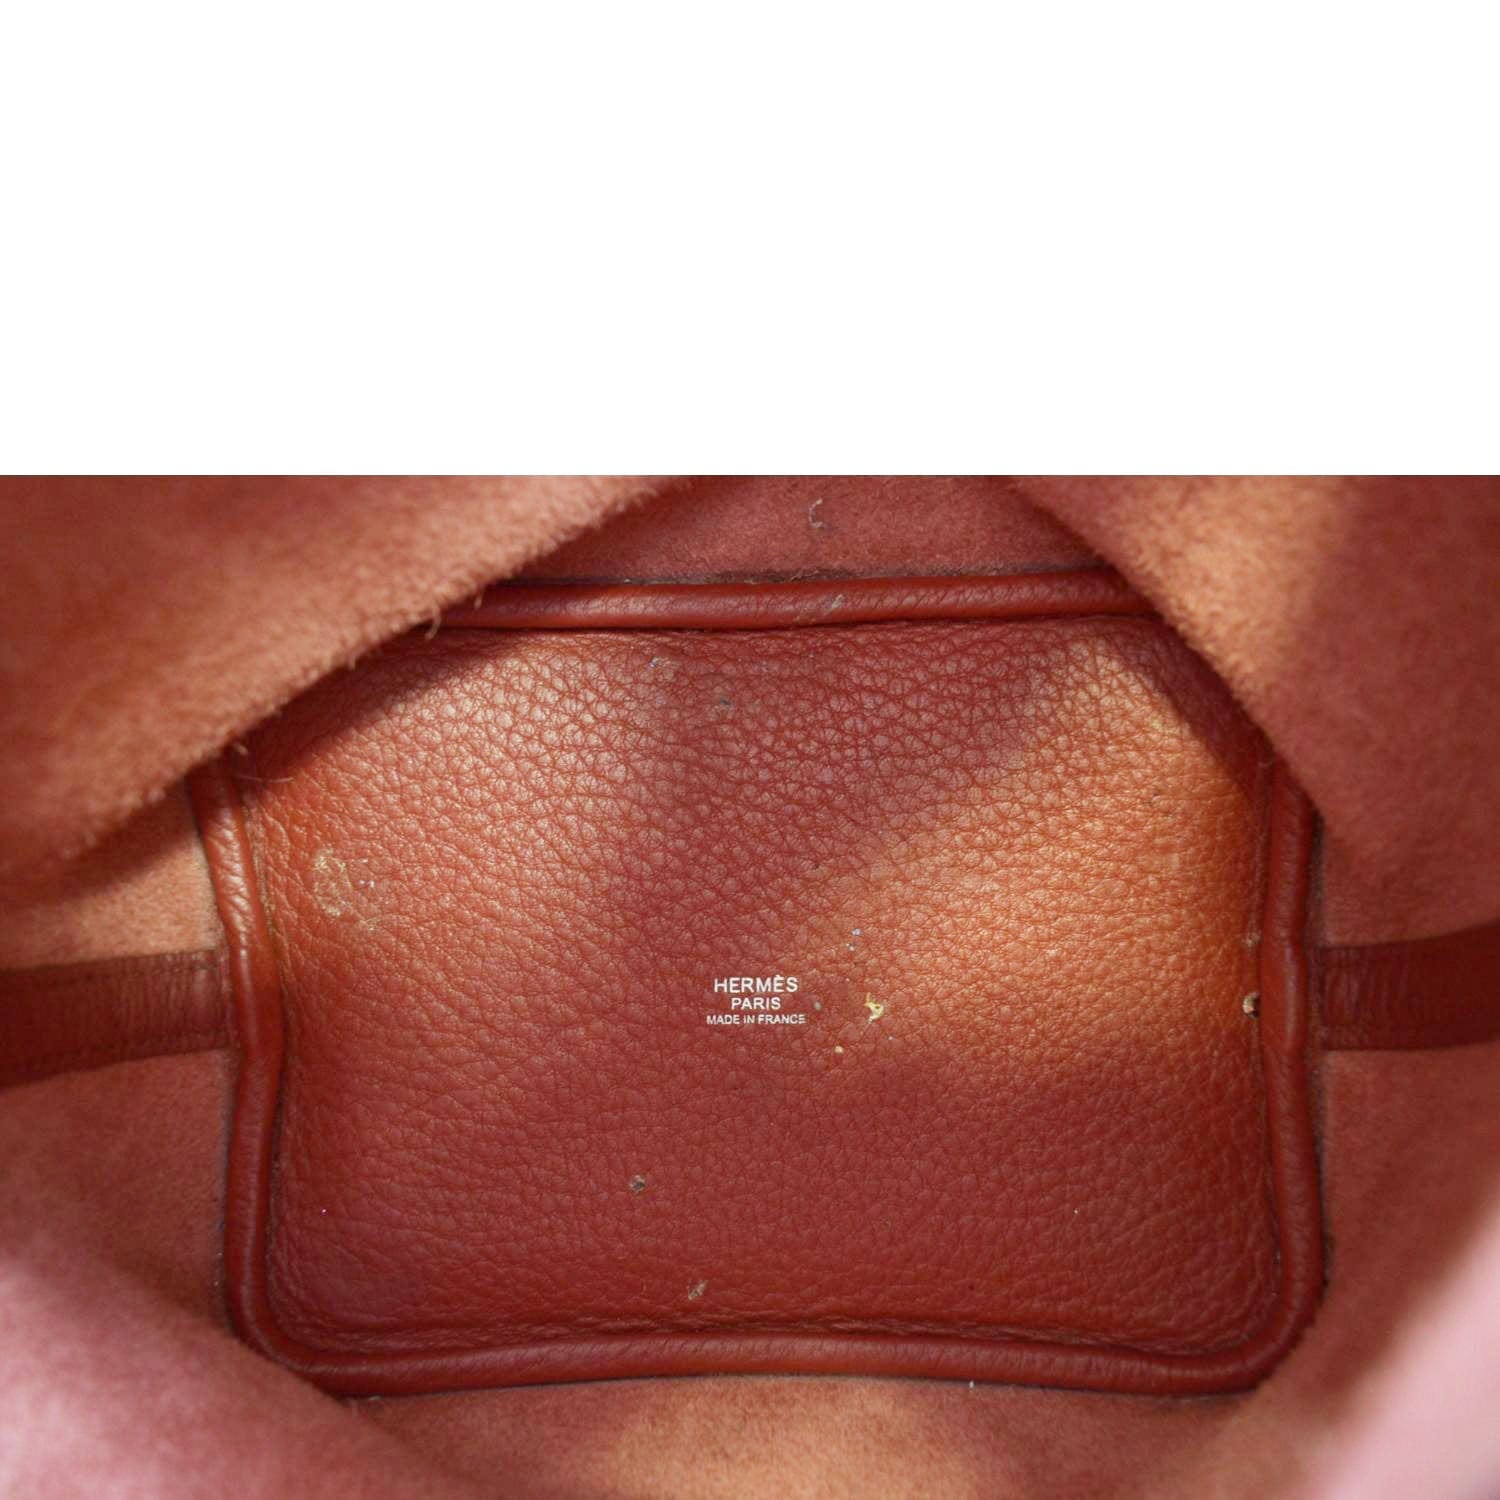 Hermes Picotin Lock 18 Taurillon Clemence Leather Hobo Bag